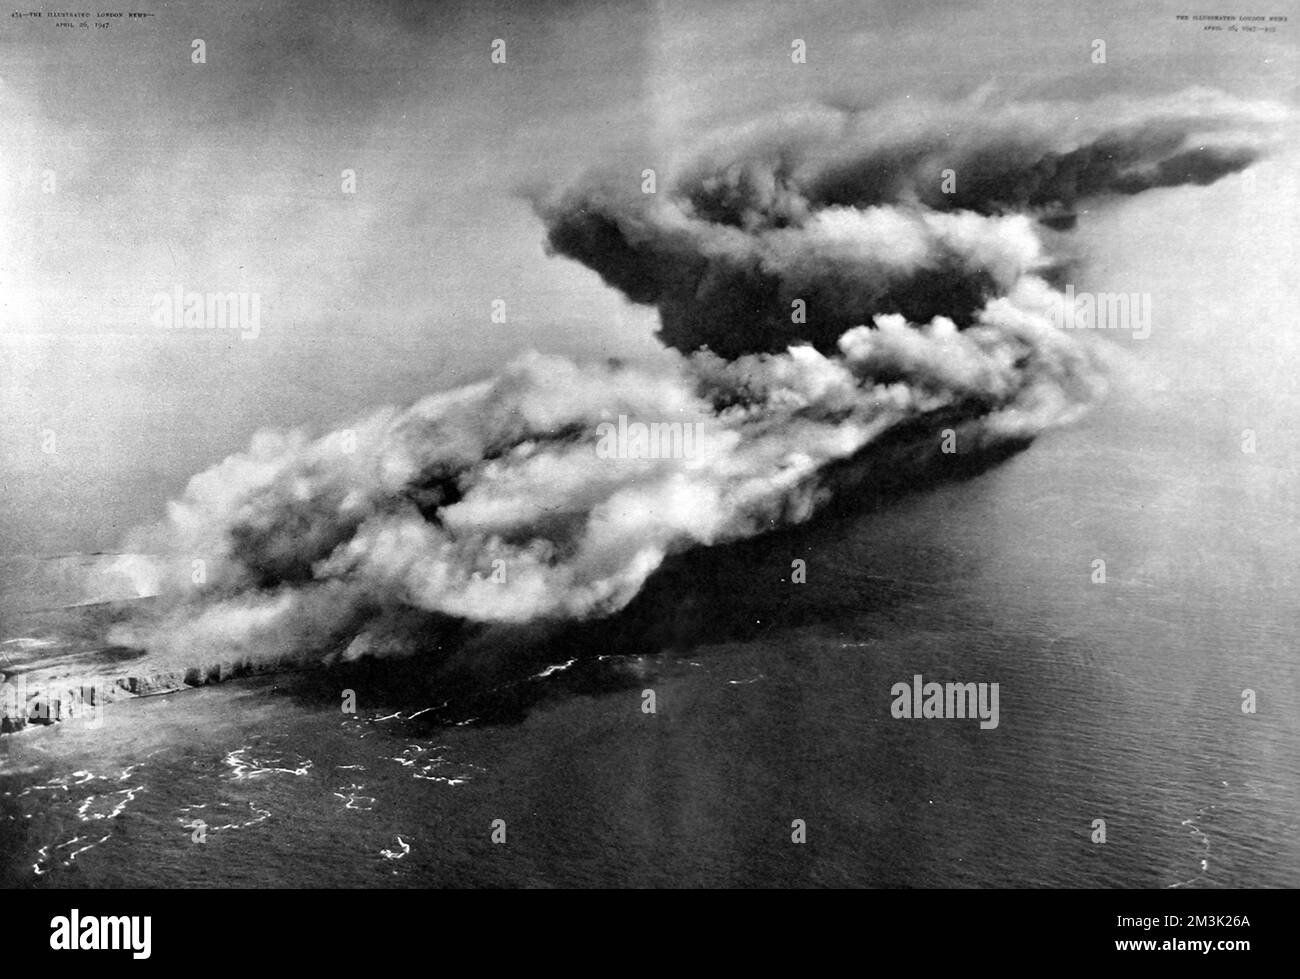 Photographie aérienne montrant la destruction de l'ancienne base navale d'Heligoland, en Allemagne, le 18th avril 1947. Heligoland avait été un bastion pour les forces militaires allemandes pendant les deux guerres mondiales et a été détruit par les forces armées britanniques, en utilisant 6700 tonnes de haut explosif, dans le cadre de la reconstruction d'après-guerre de l'Allemagne. Le grand nuage de fumée montré dans cette photo était rouge avec du grès désintégré et s'est levé à une hauteur estimée de 10 000 pieds. Date: 1947 Banque D'Images